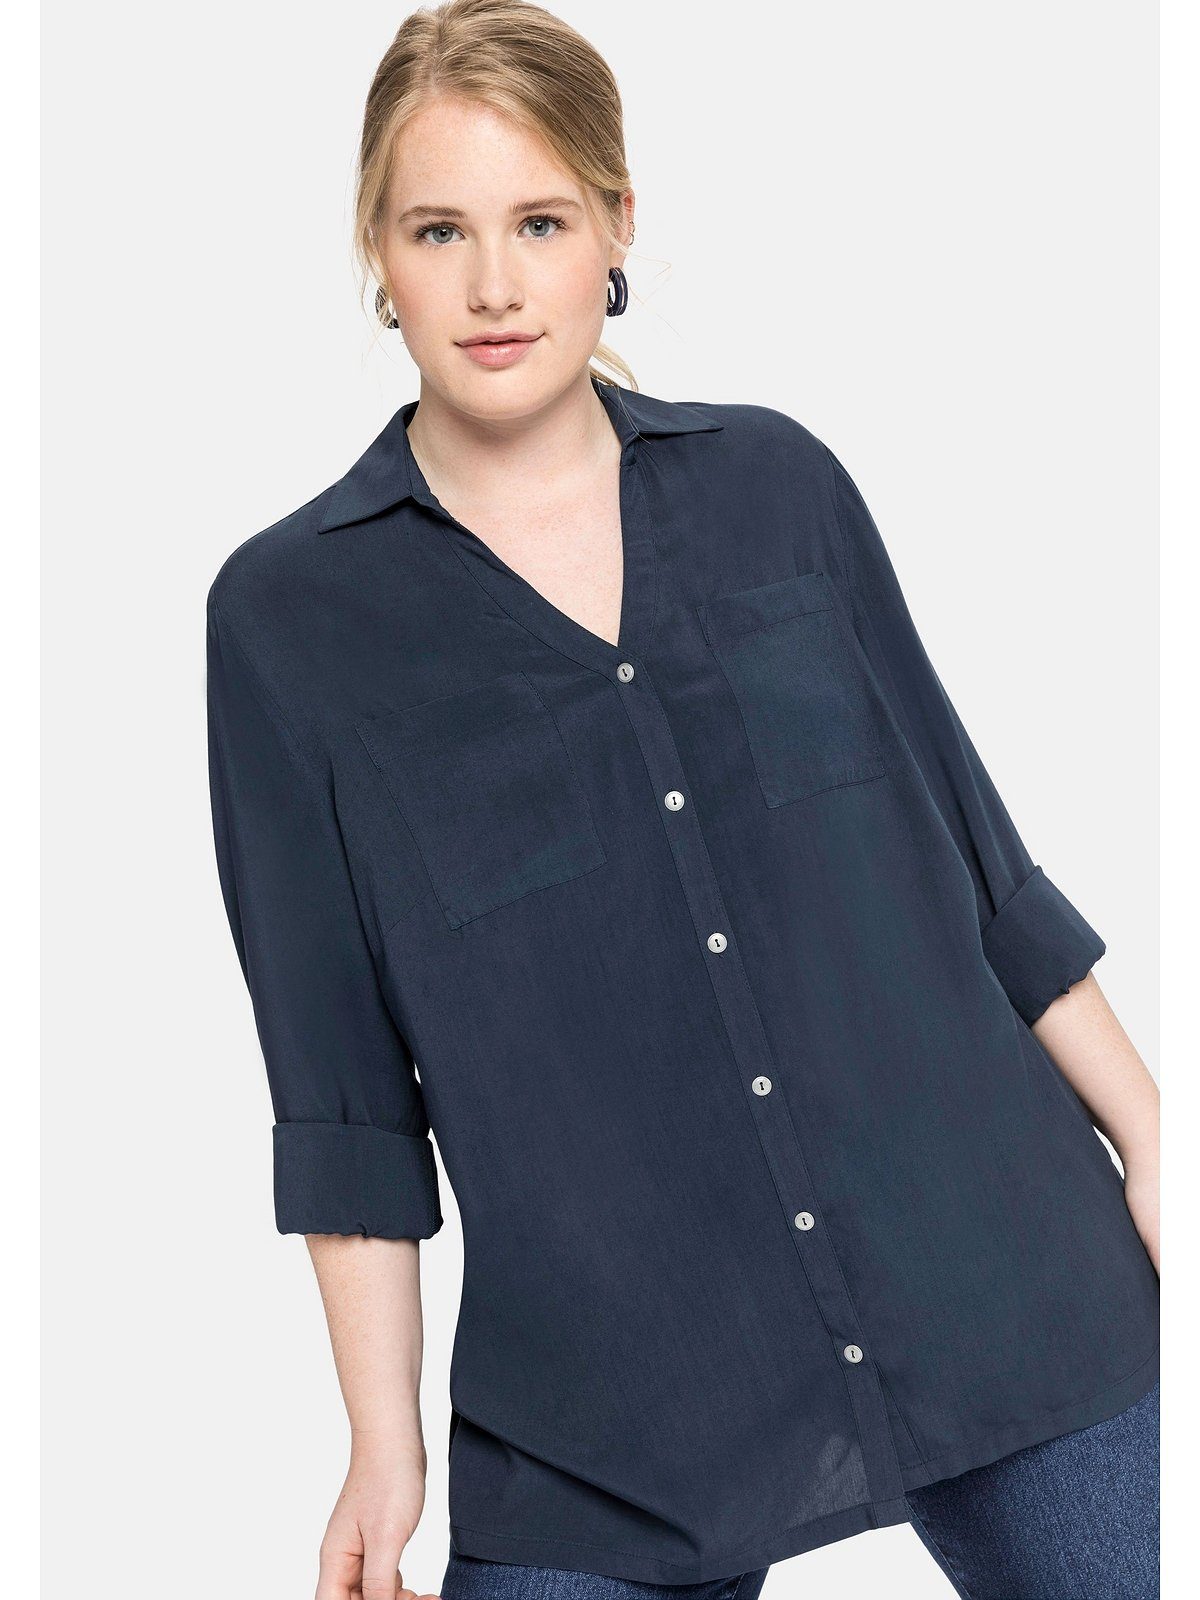 Blaue gestreifte Blusen für Damen kaufen | OTTO online